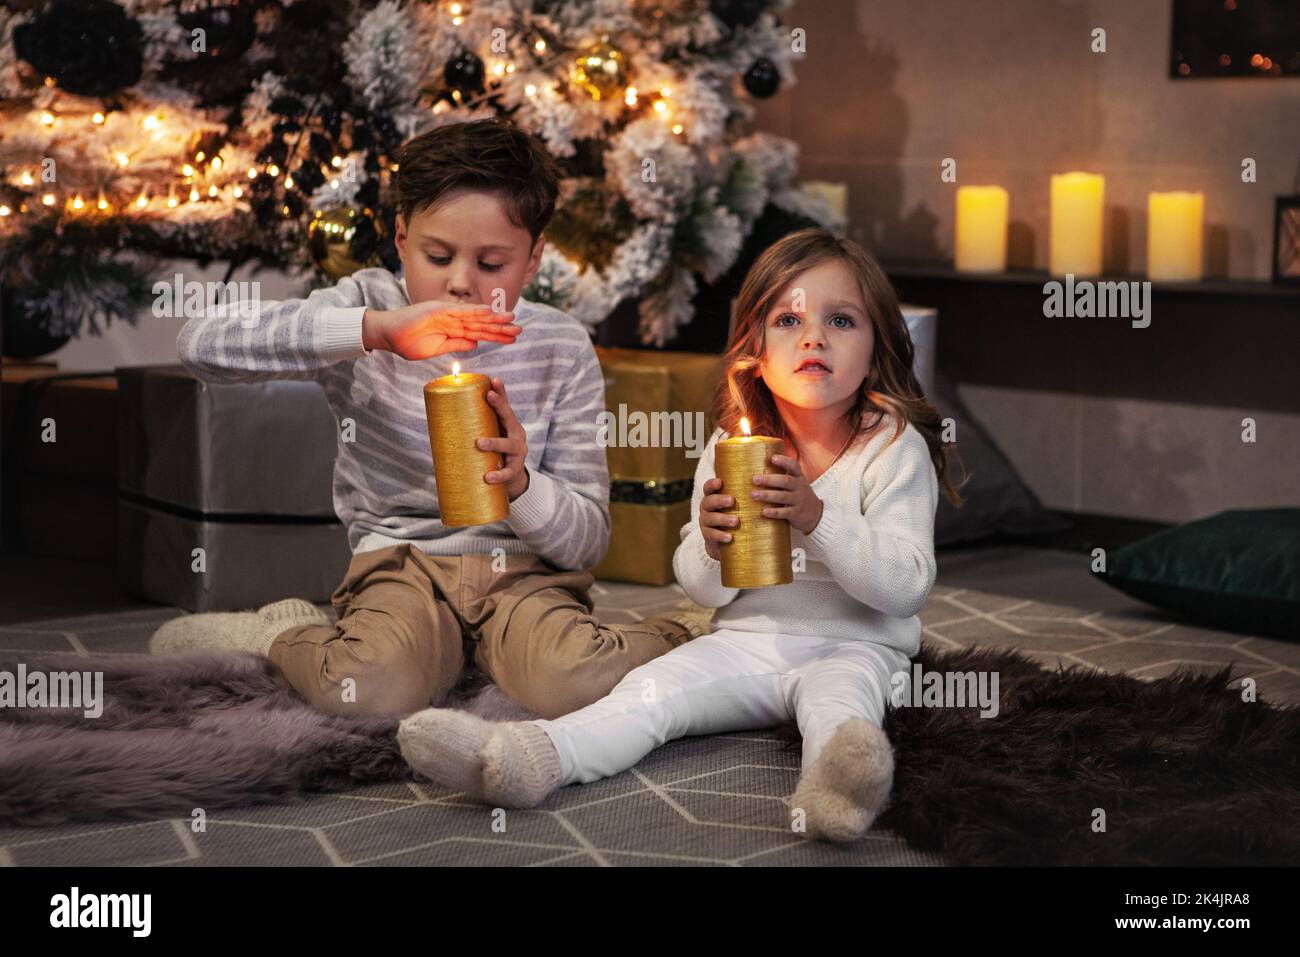 Entzückende Kinder, Junge und Mädchen halten gelbe Kerzen und machen Wunsch. Bruder und nette Schwester sitzen auf dem Boden in dunklen Raum. Weihnachtsbaum und Präs Stockfoto